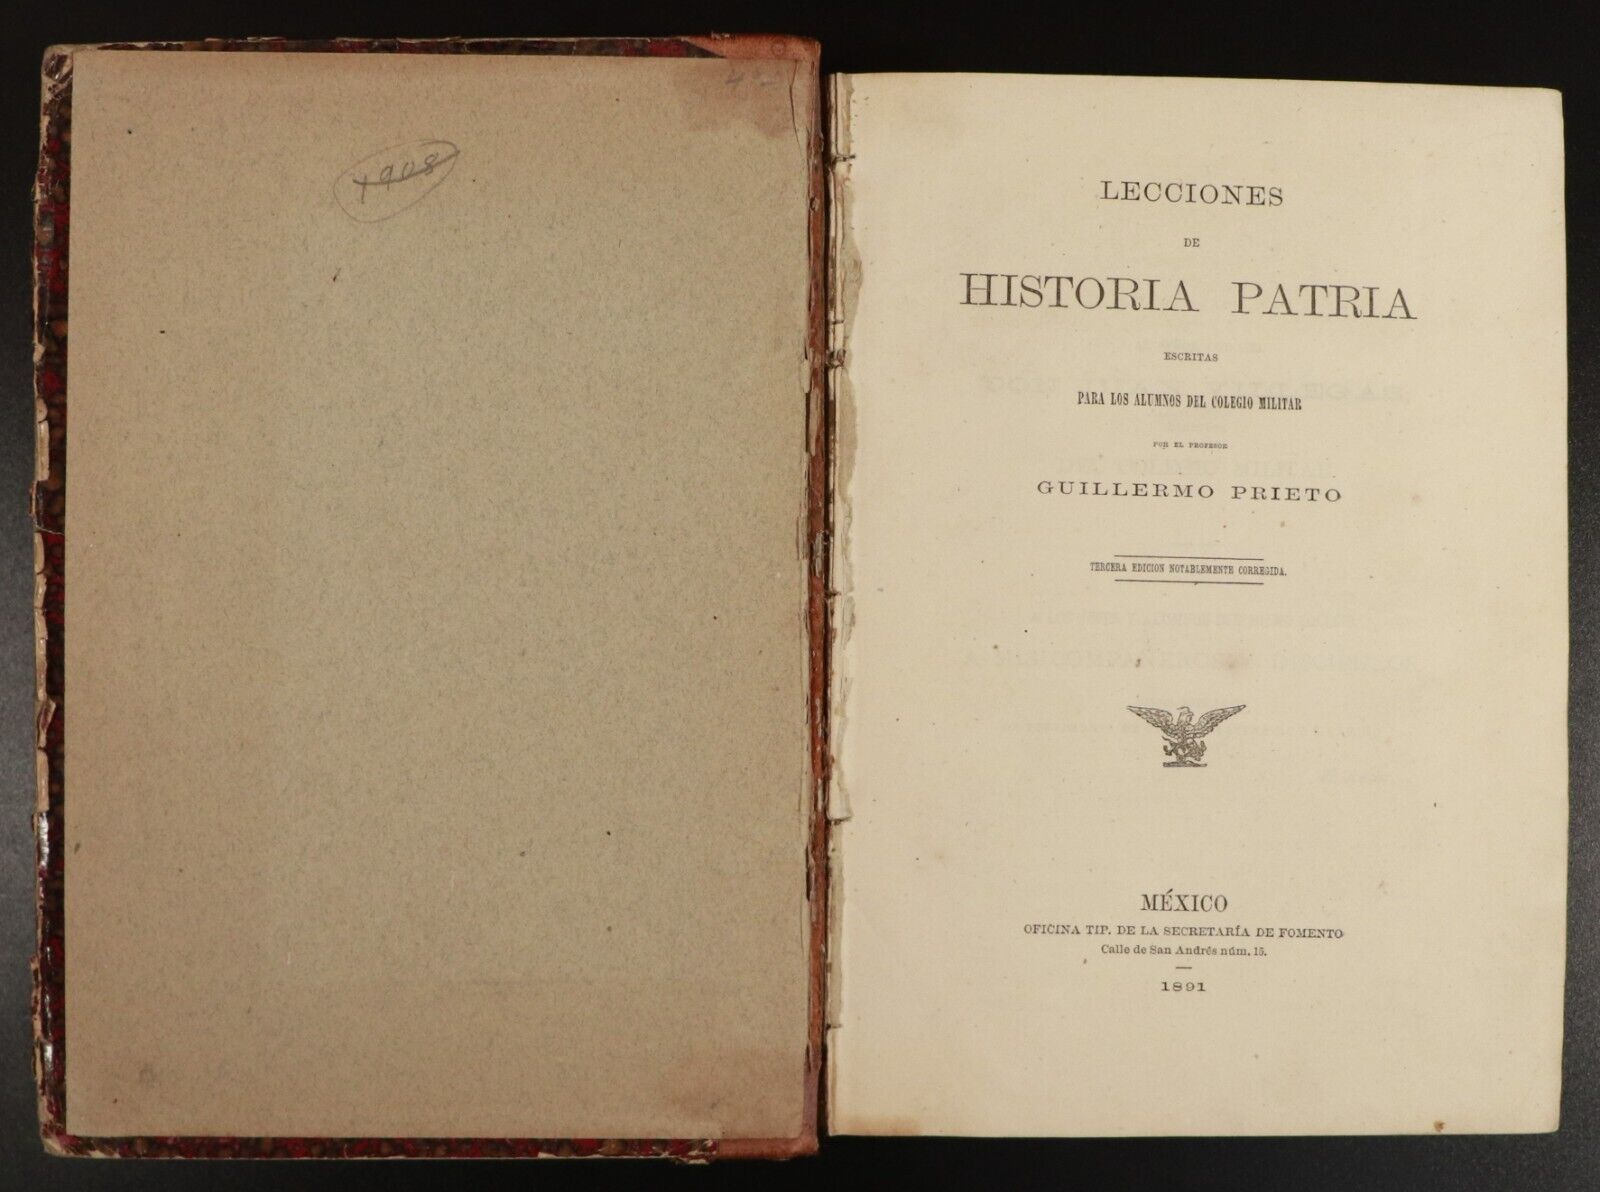 1891 Lecciones de Historia Patria by Guillermo Prieto Antiquarian History Book - 0